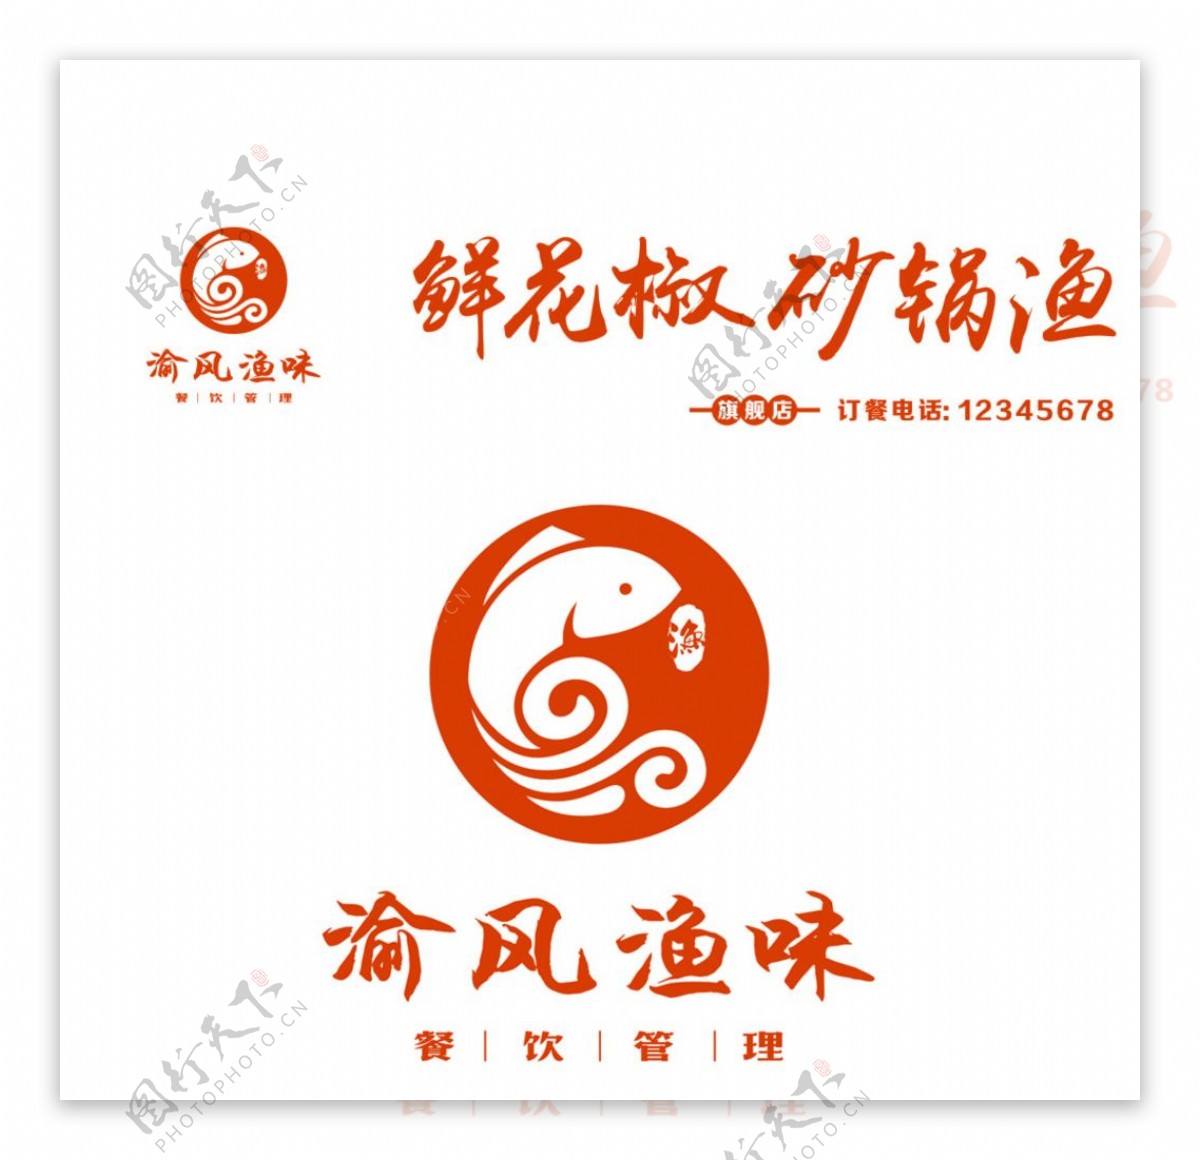 渝风渔味logo